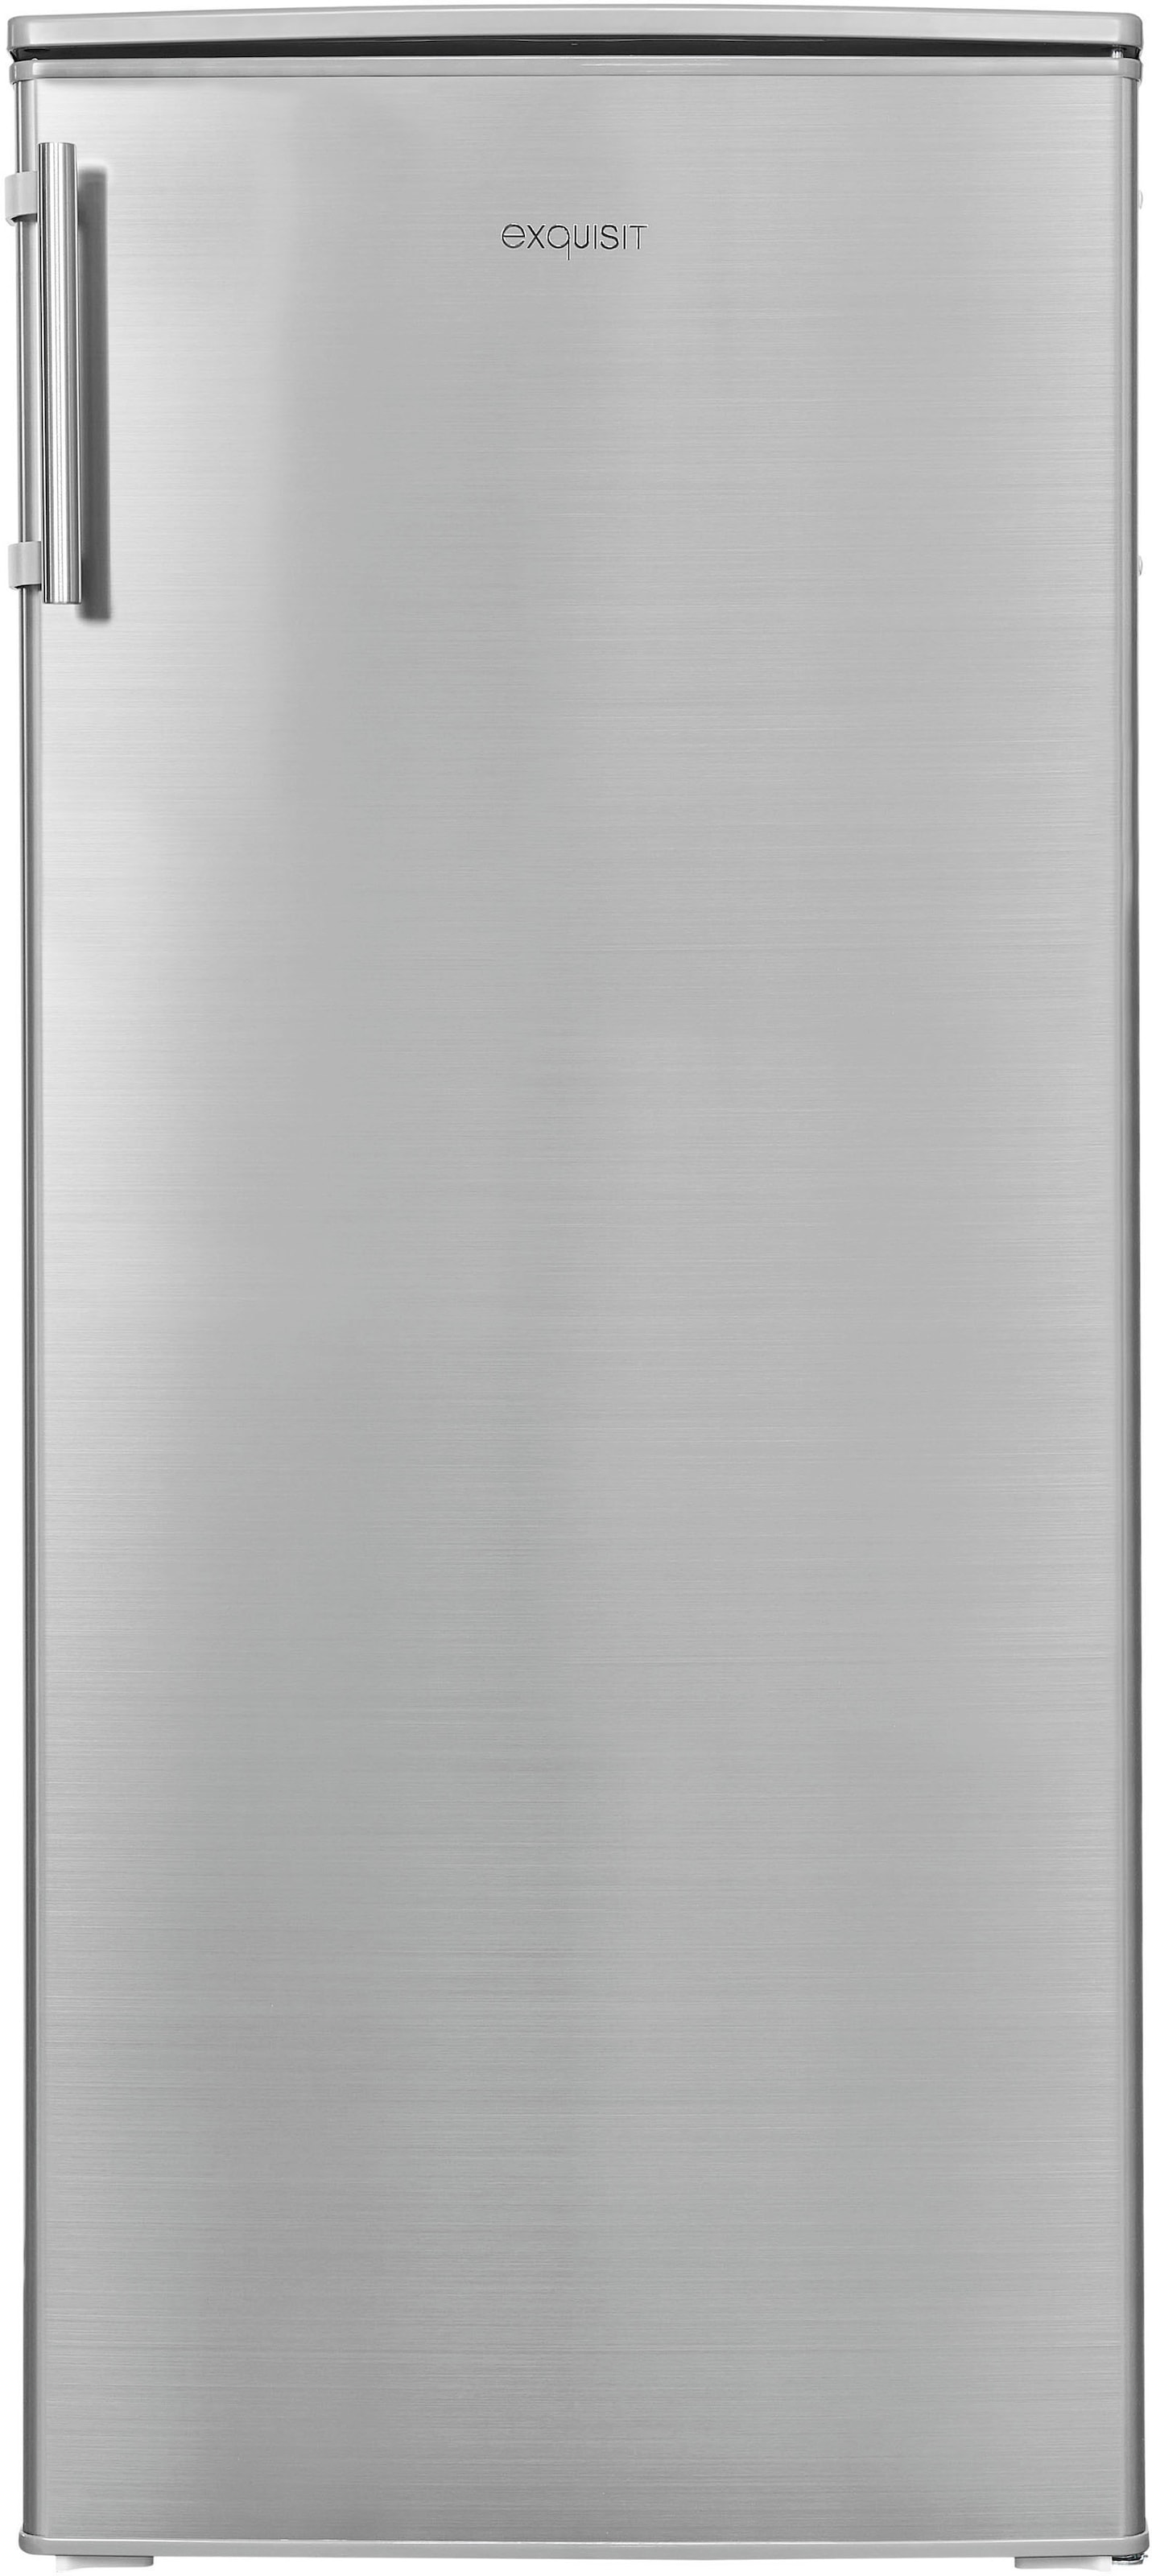 exquisit Kühlschrank »KS185-4-HE-040E«, KS185-4-HE-040E inoxlook, 122 cm hoch, 55 cm breit, 190 L Volumen, Schnellgefrieren, 4 Sterne